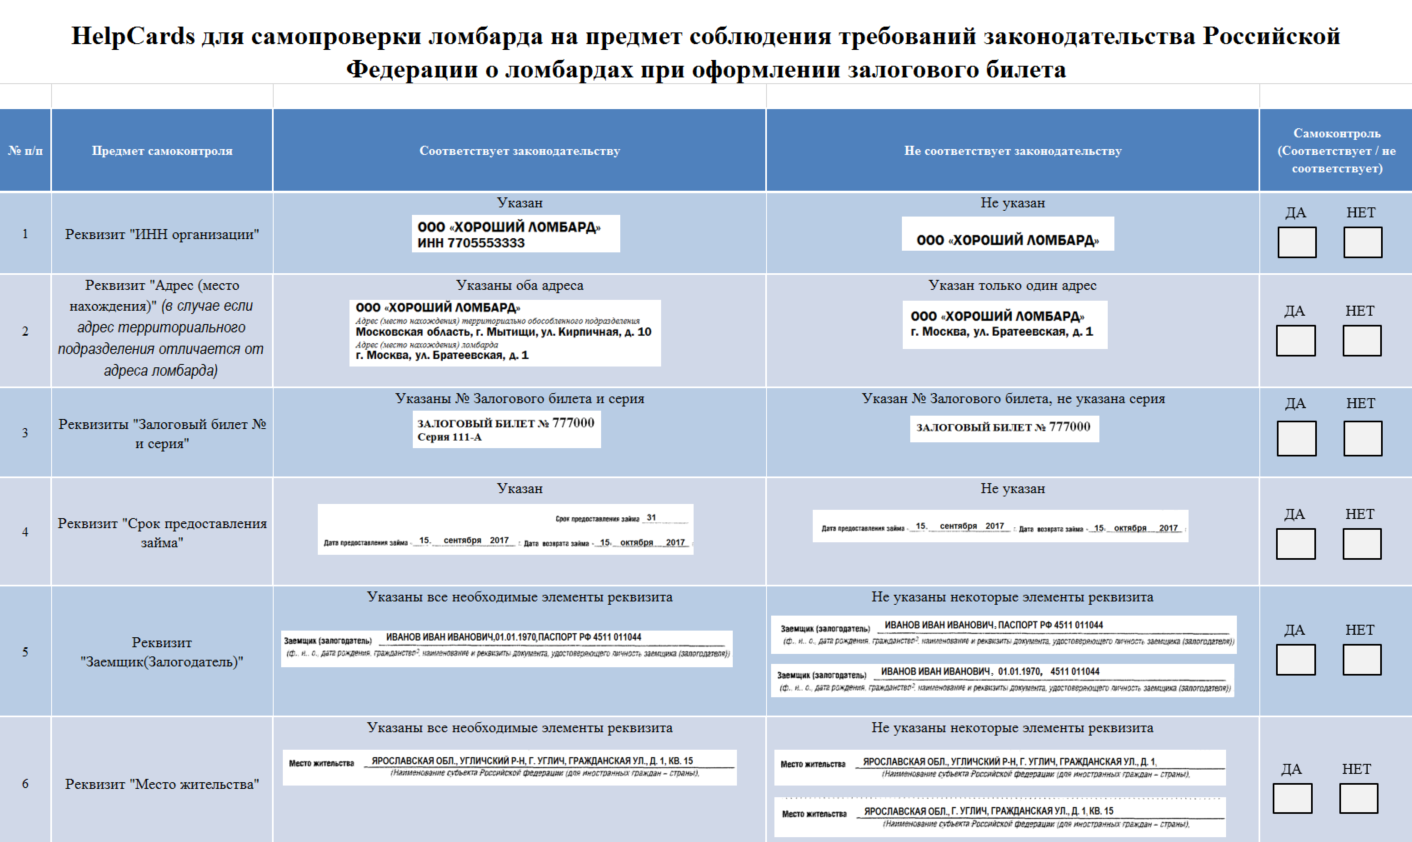 HelpCards самоконтроля по соблюдению ломбардами требований законодательства РФ о ломбардах и о потребительском кредите (займе)